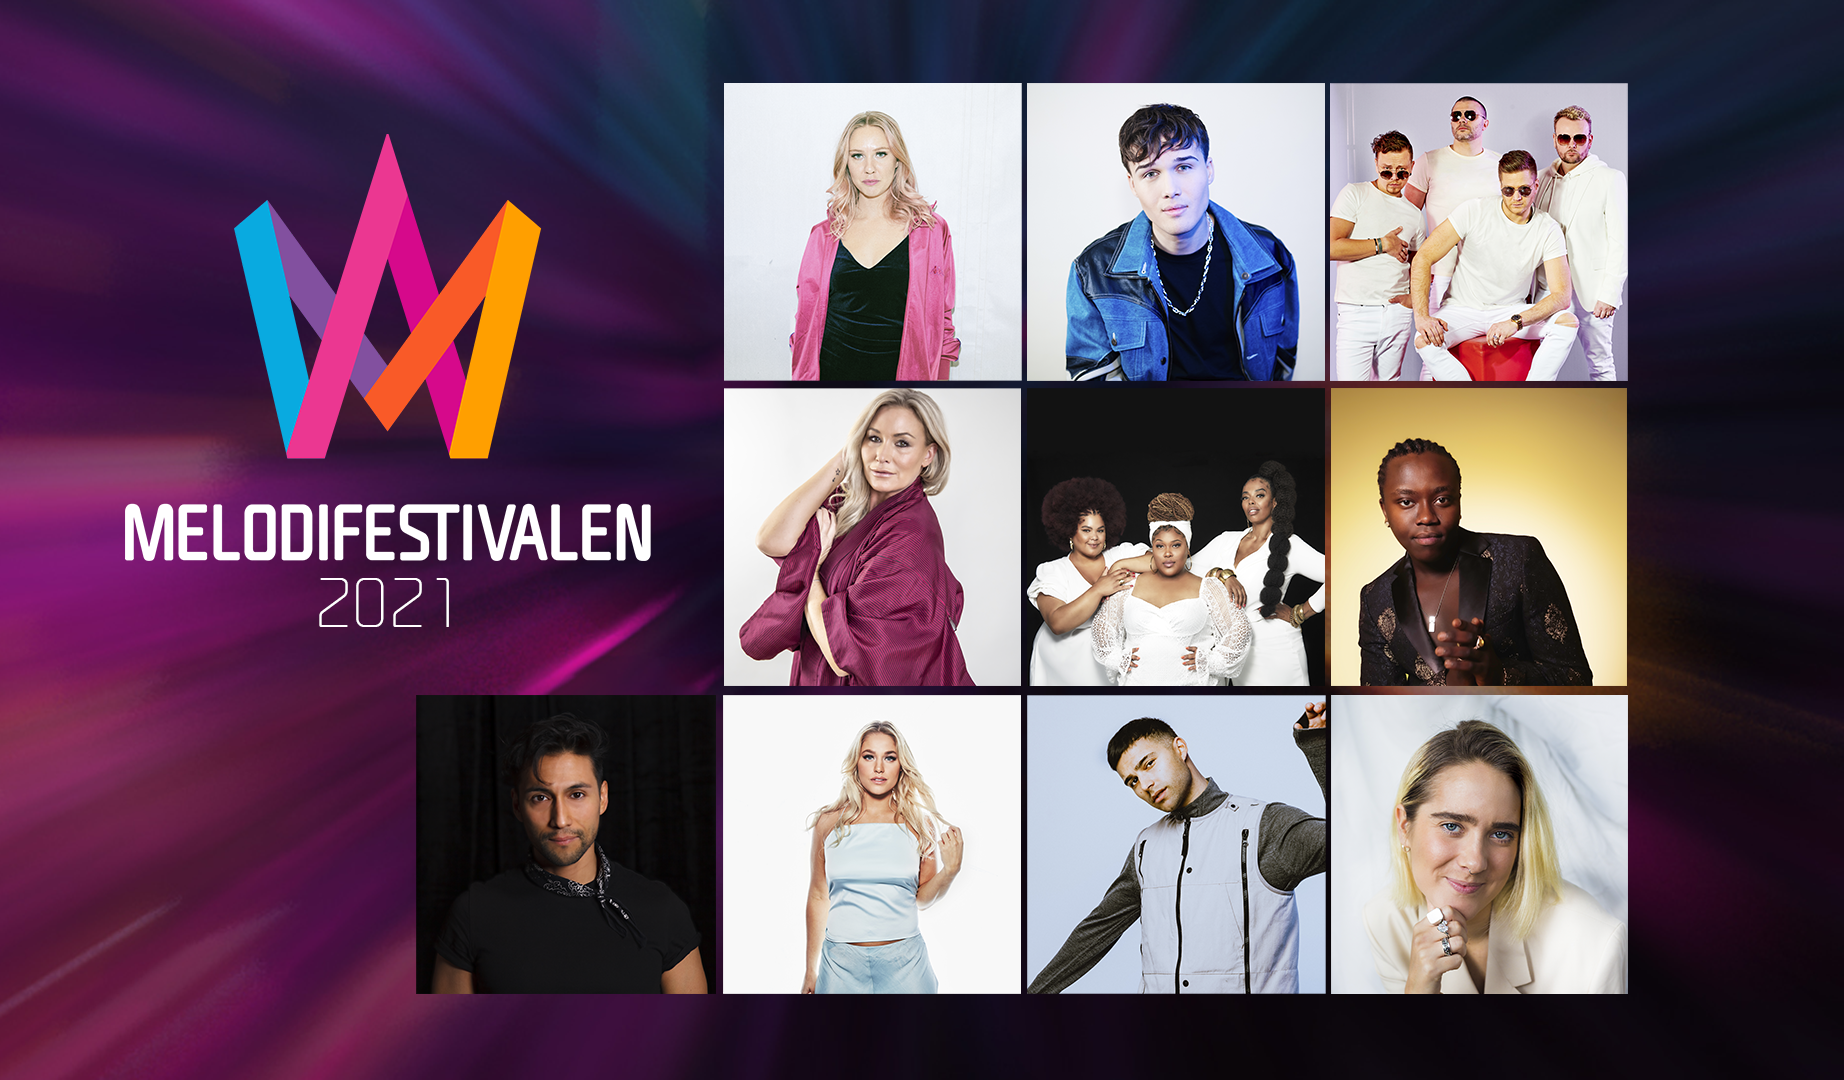 Suecia: conoce la alineación completa del Melodifestivalen 2021